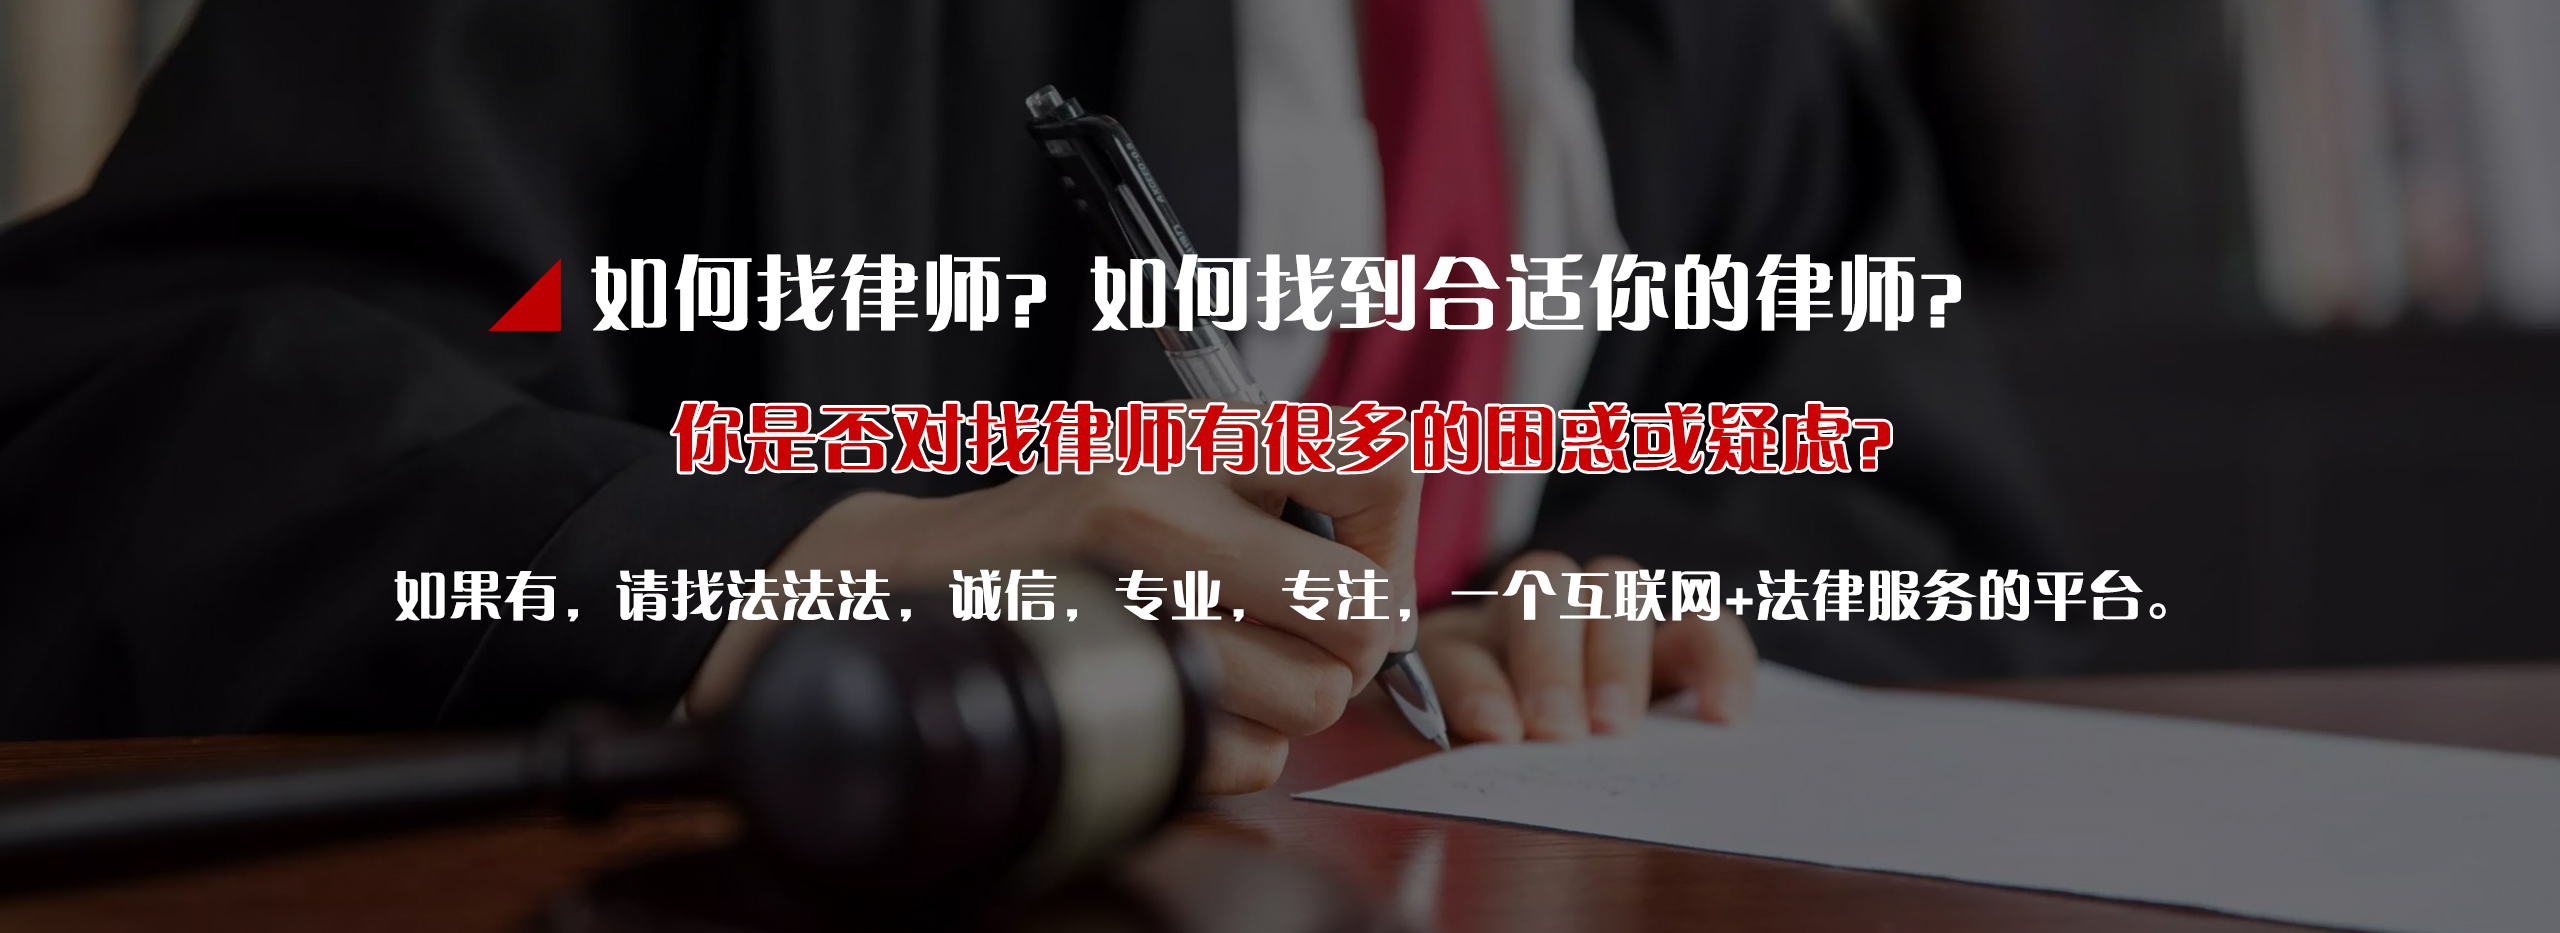 中小公司借款兼并_变更-四川法法法信息科技有限公司